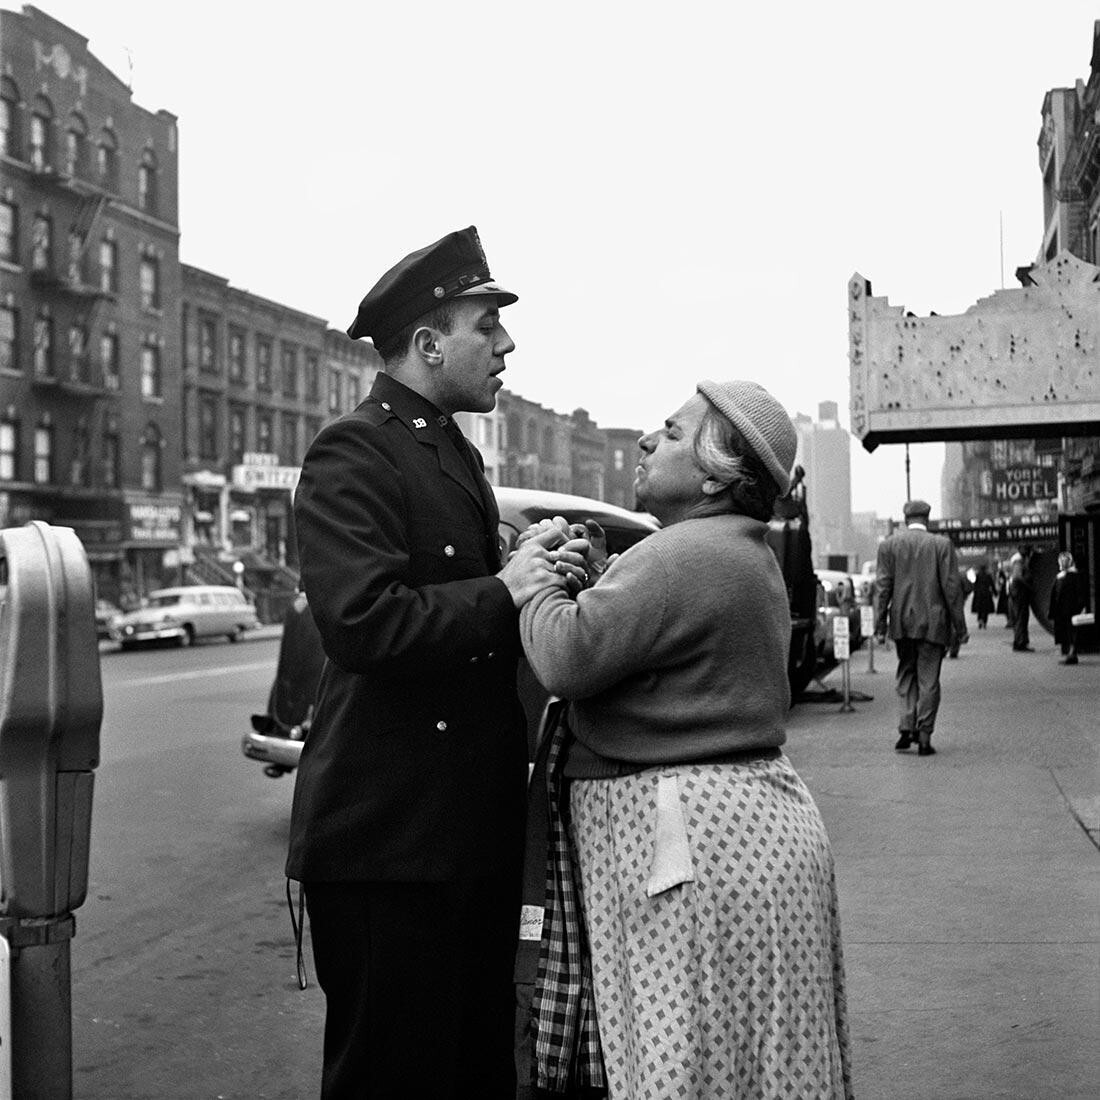 Армянка сражается на Восточной 86-й улице, сентябрь 1956 г., Нью-Йорк, штат Нью-Йорк. Фотограф Вивиан Майер